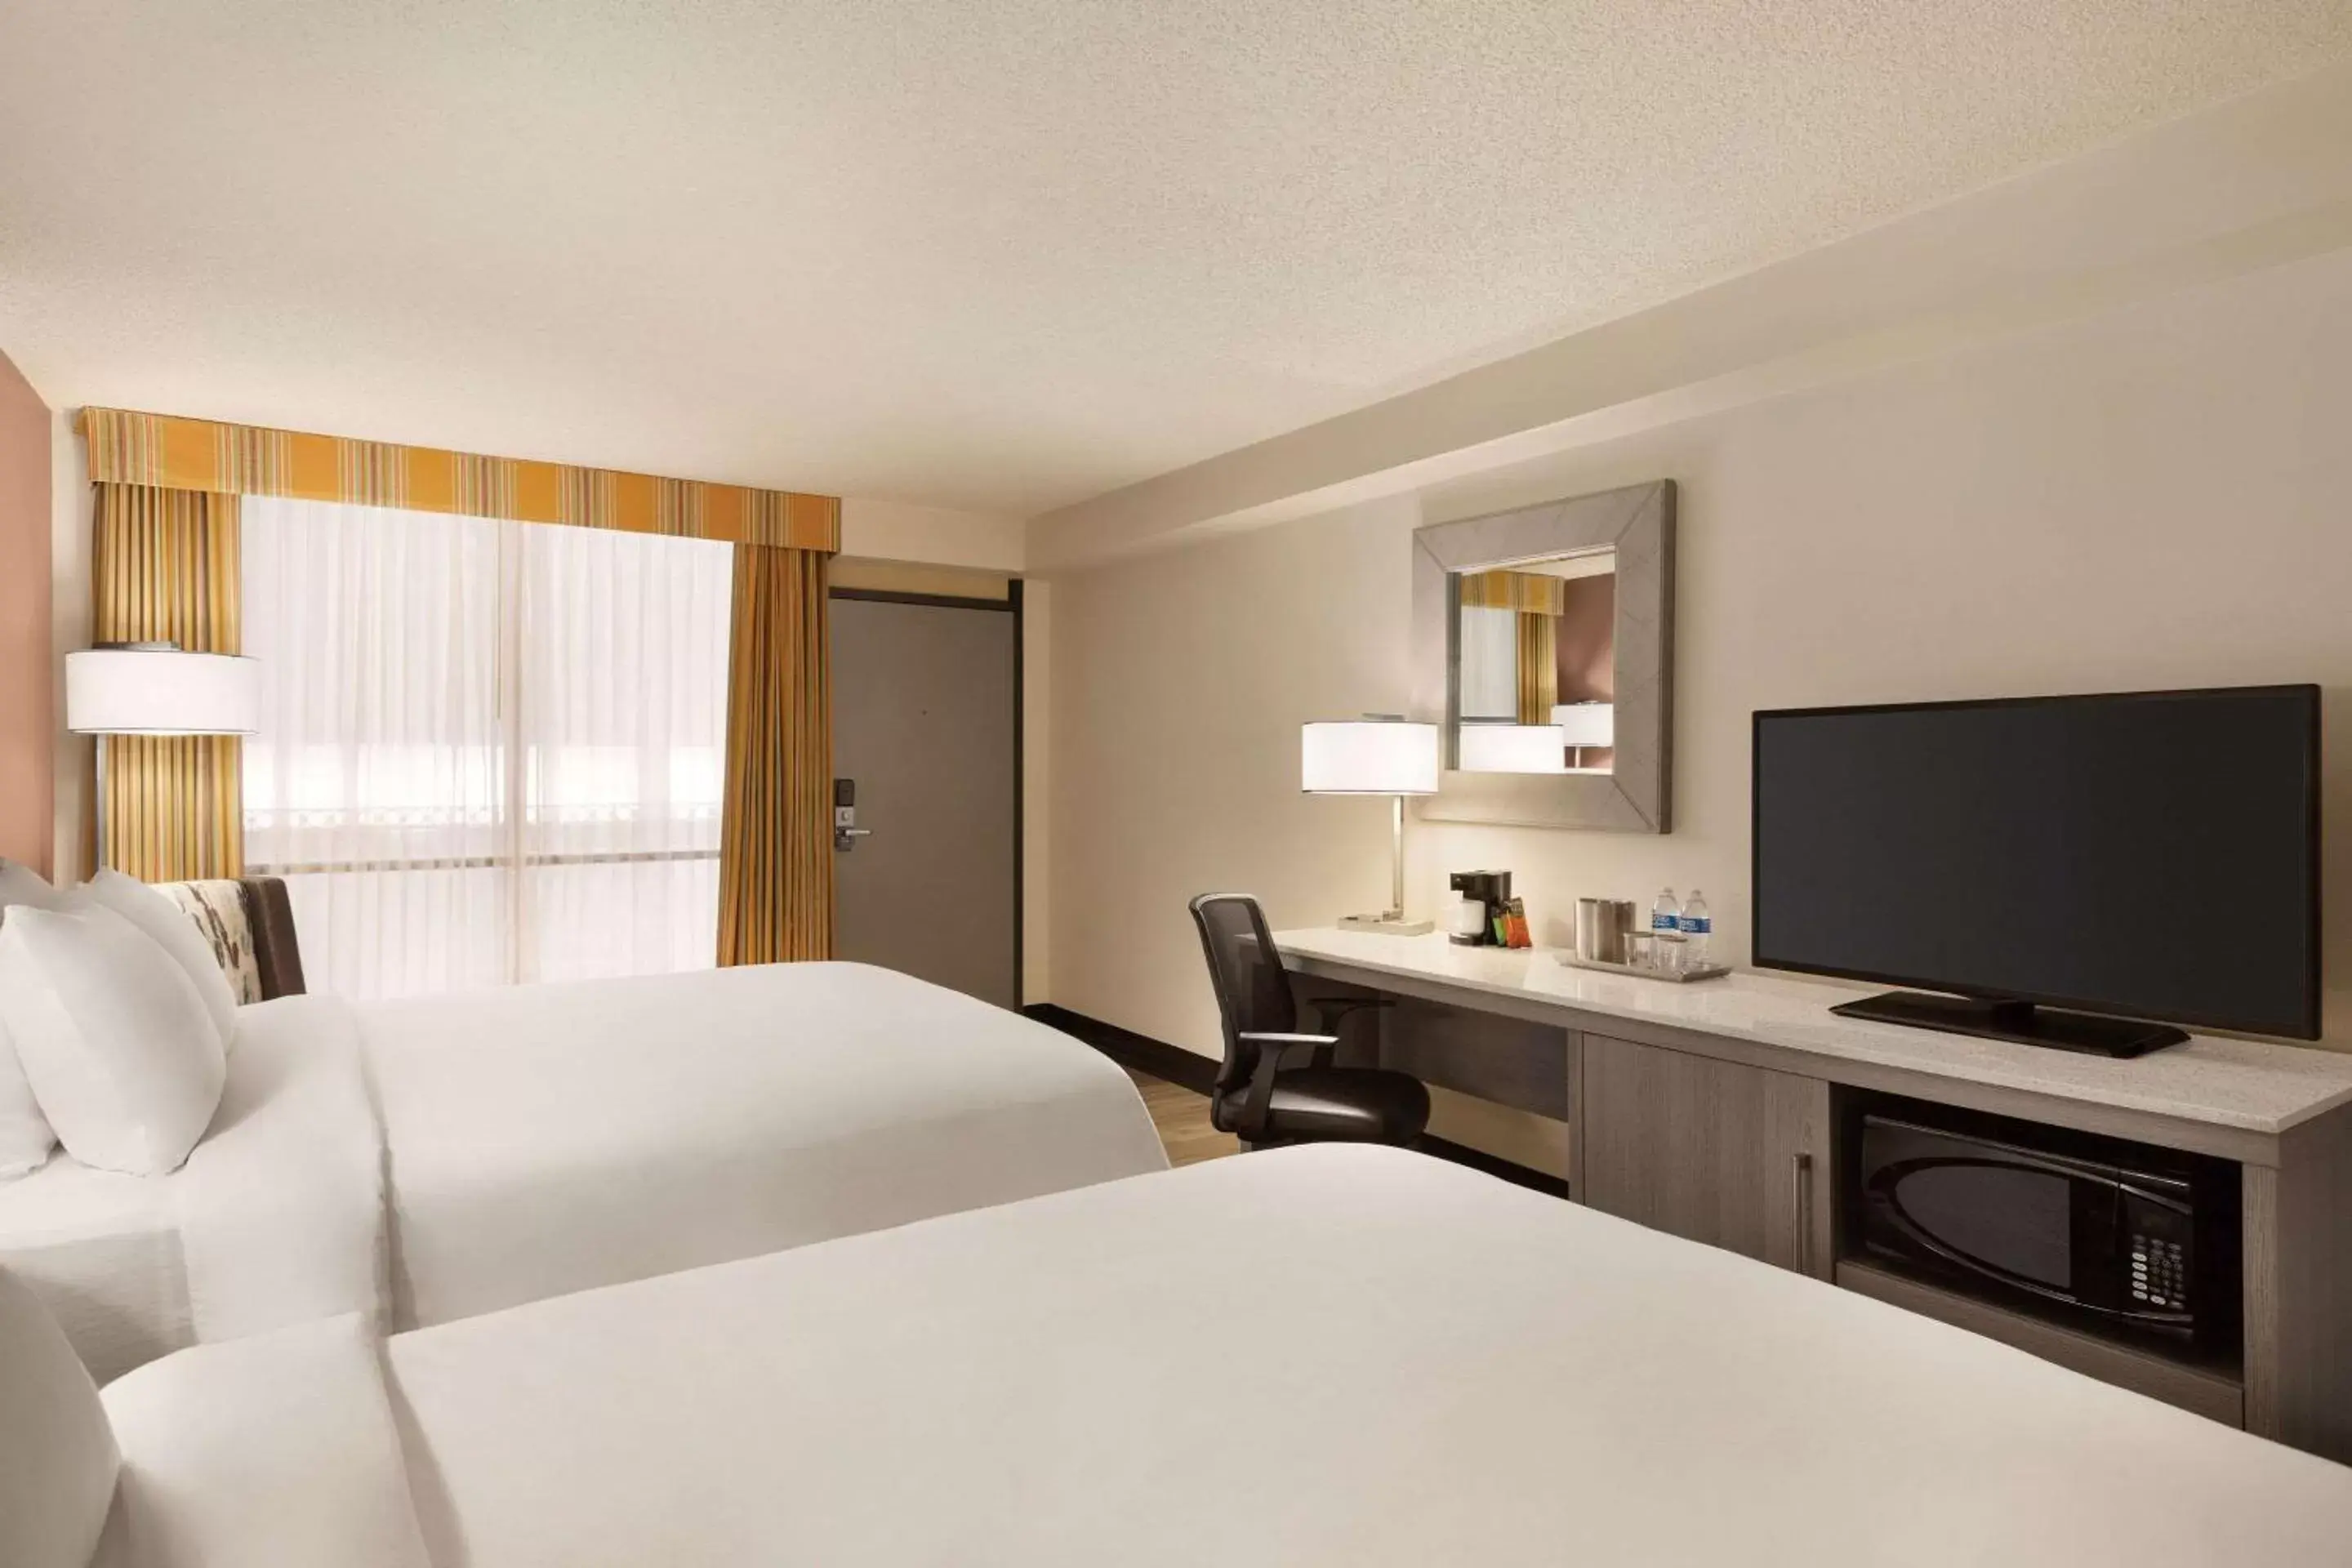 Bedroom, Bed in Radisson Hotel Lenexa Overland Park